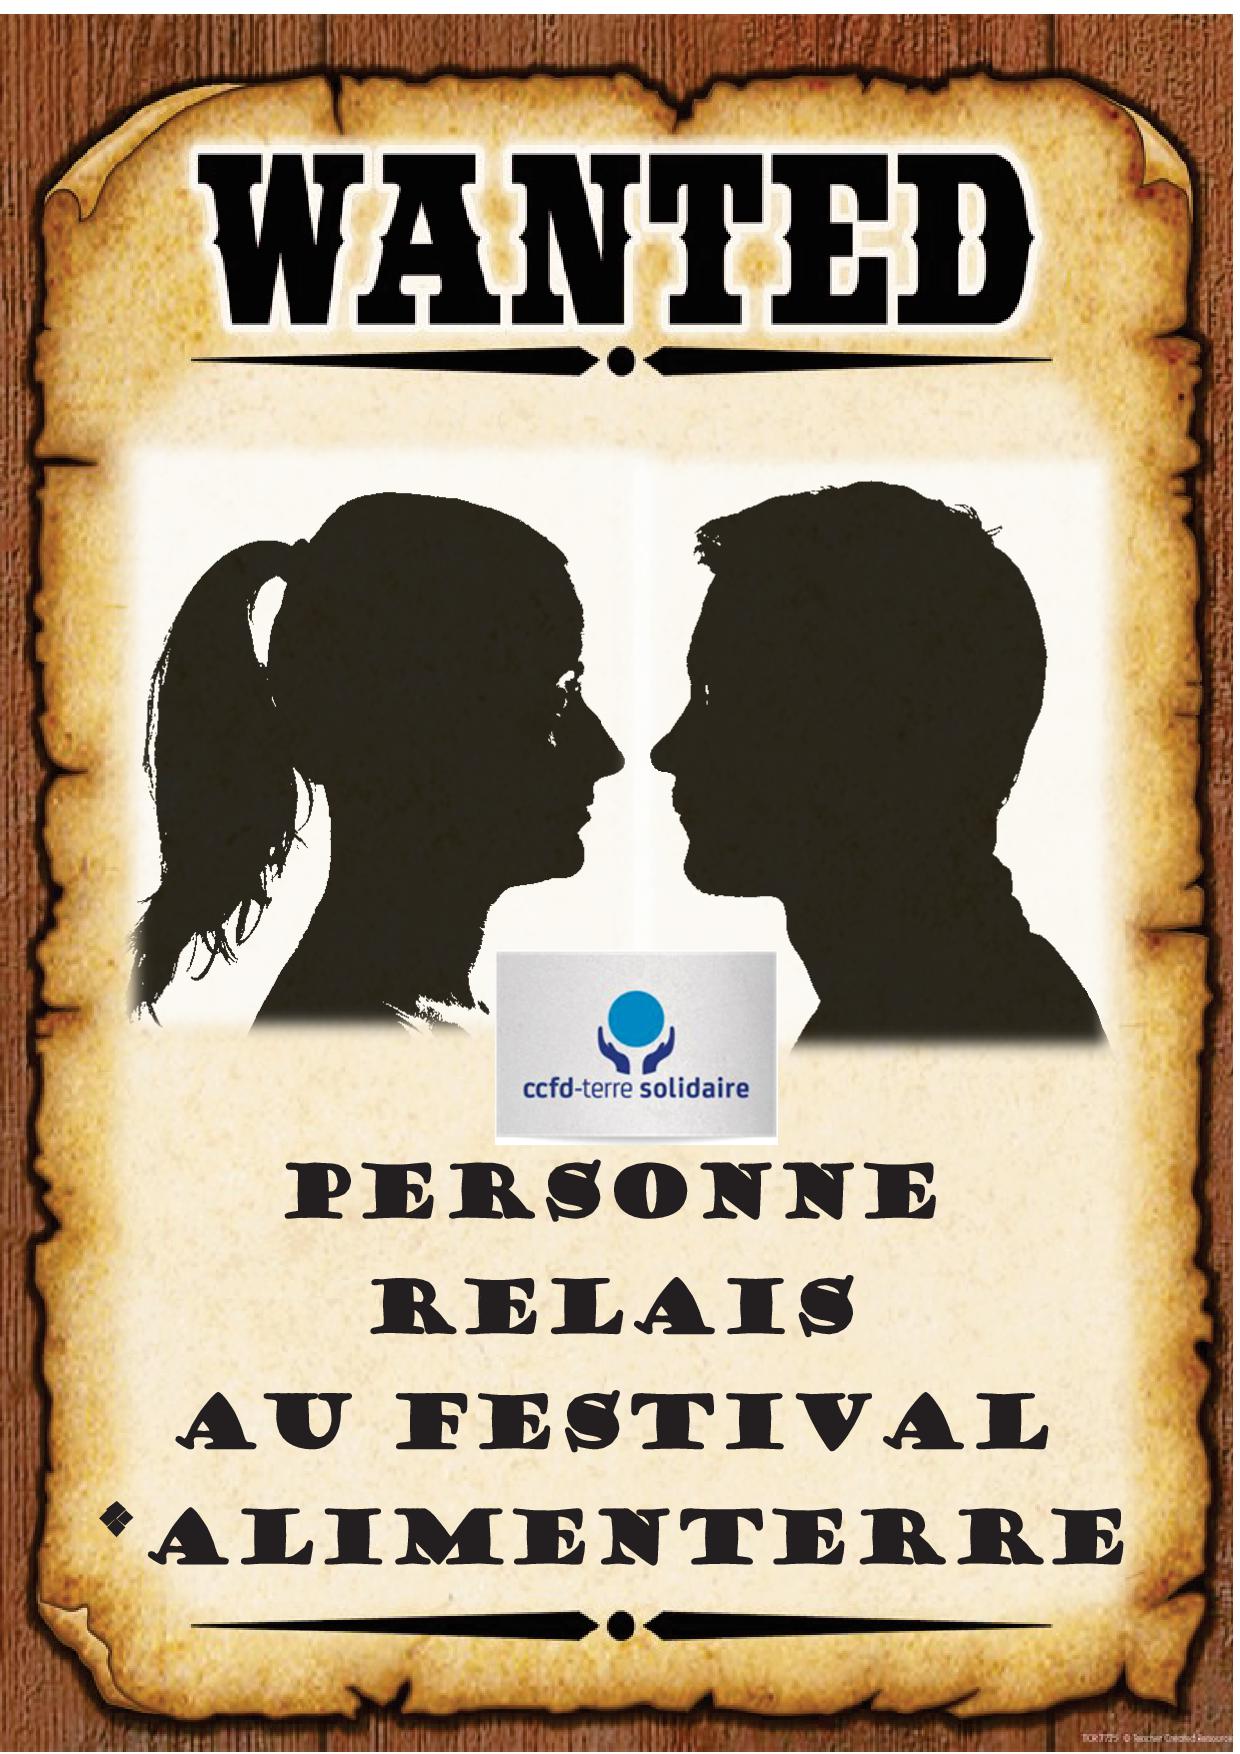 Wanted relais festival AlimenTerre v3.jpg